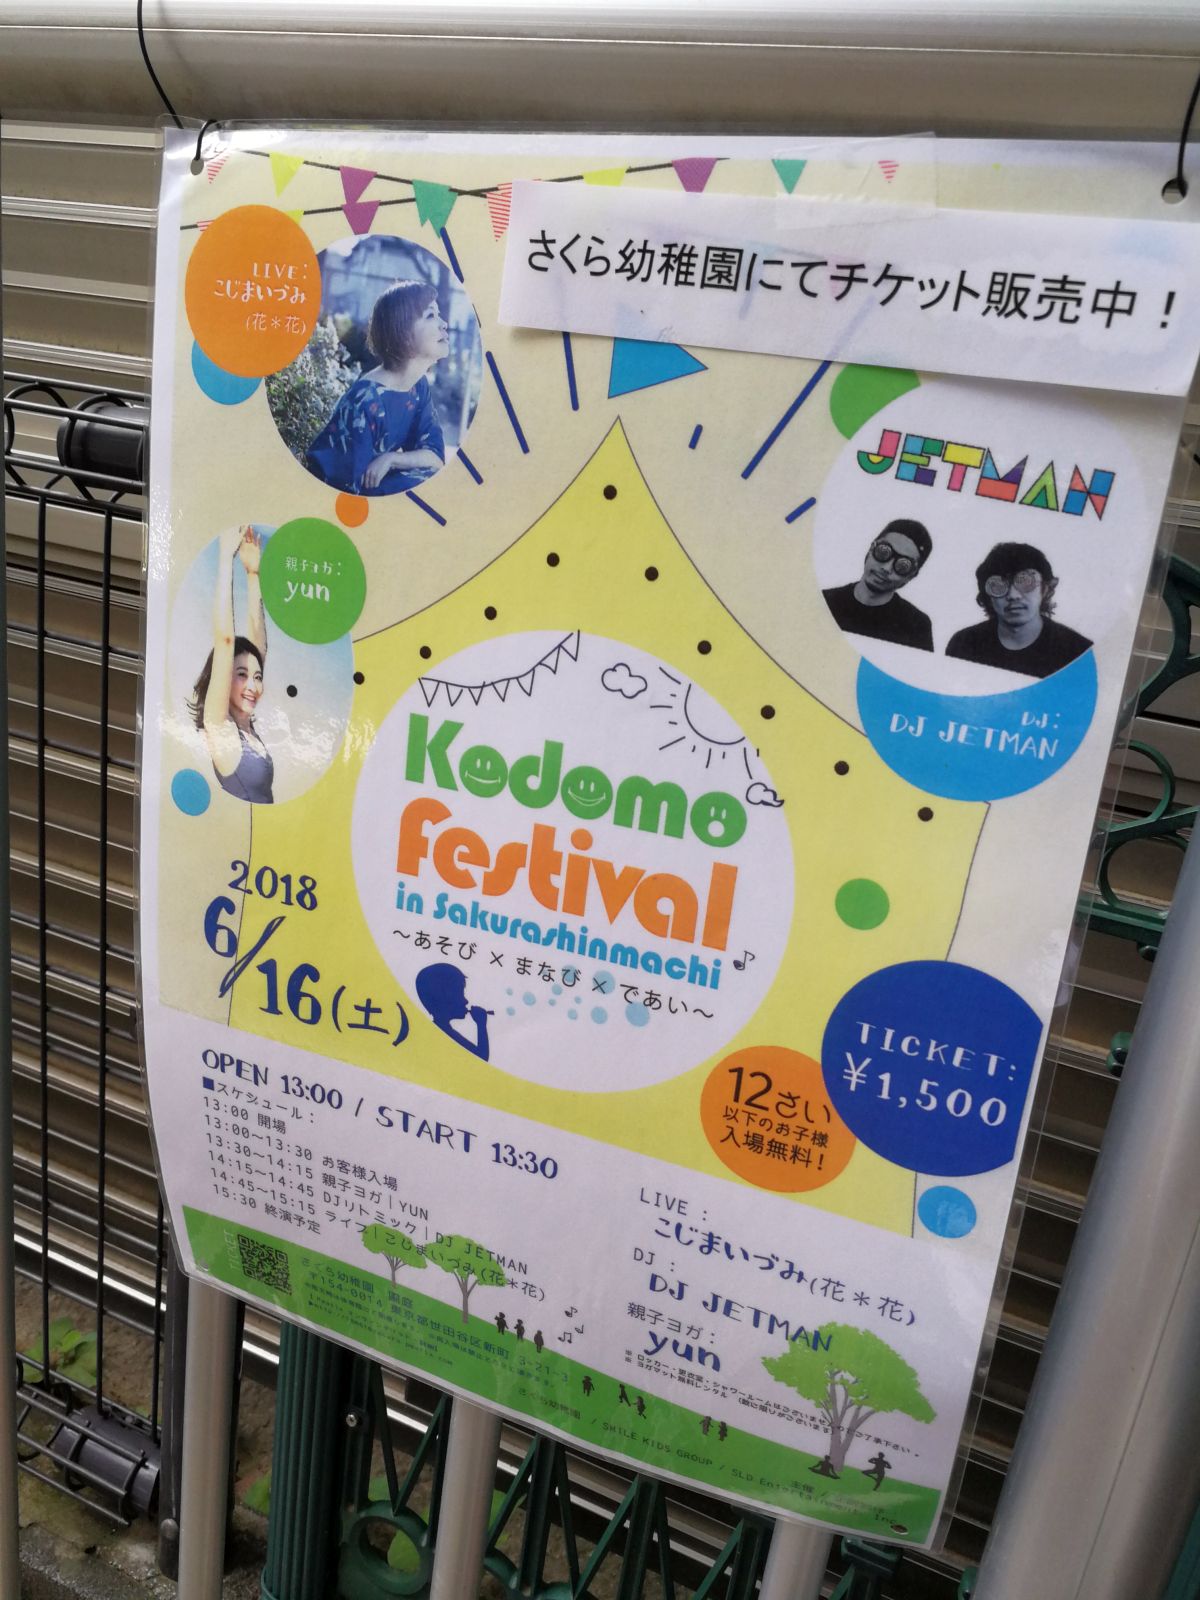 Kodomo festival